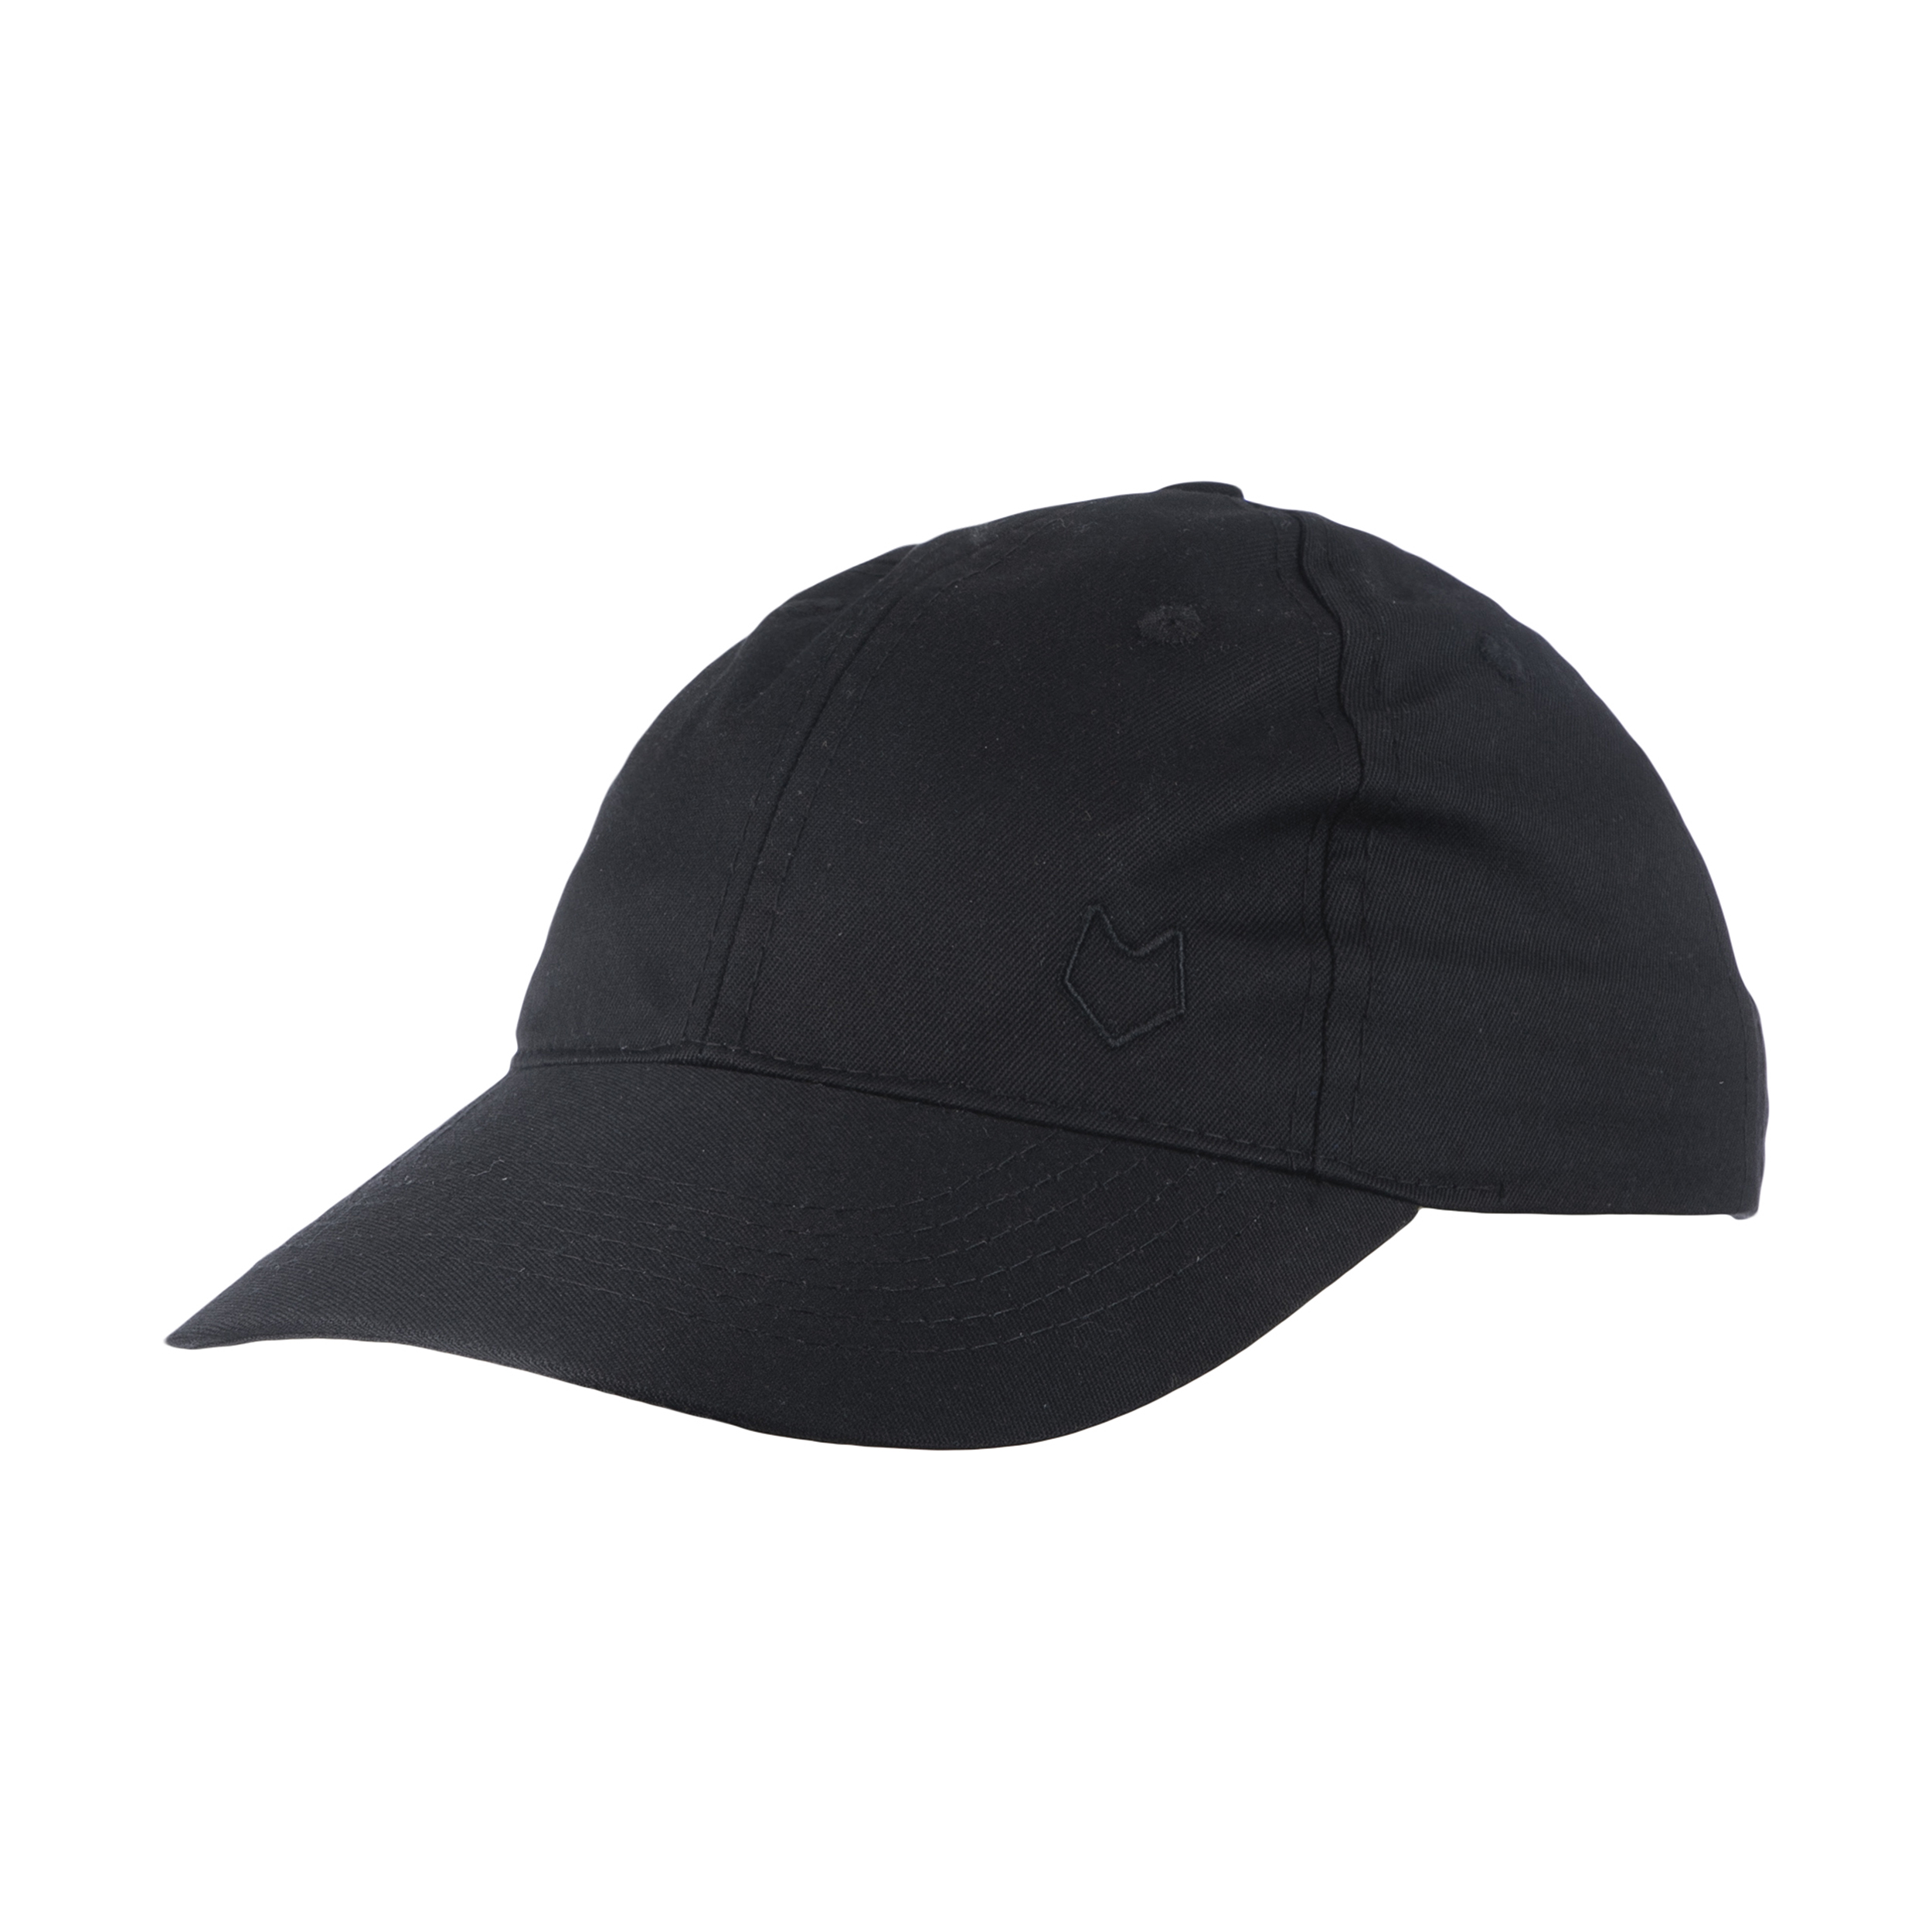 نکته خرید - قیمت روز کلاه کپ مل اند موژ مدل U07701-001 خرید